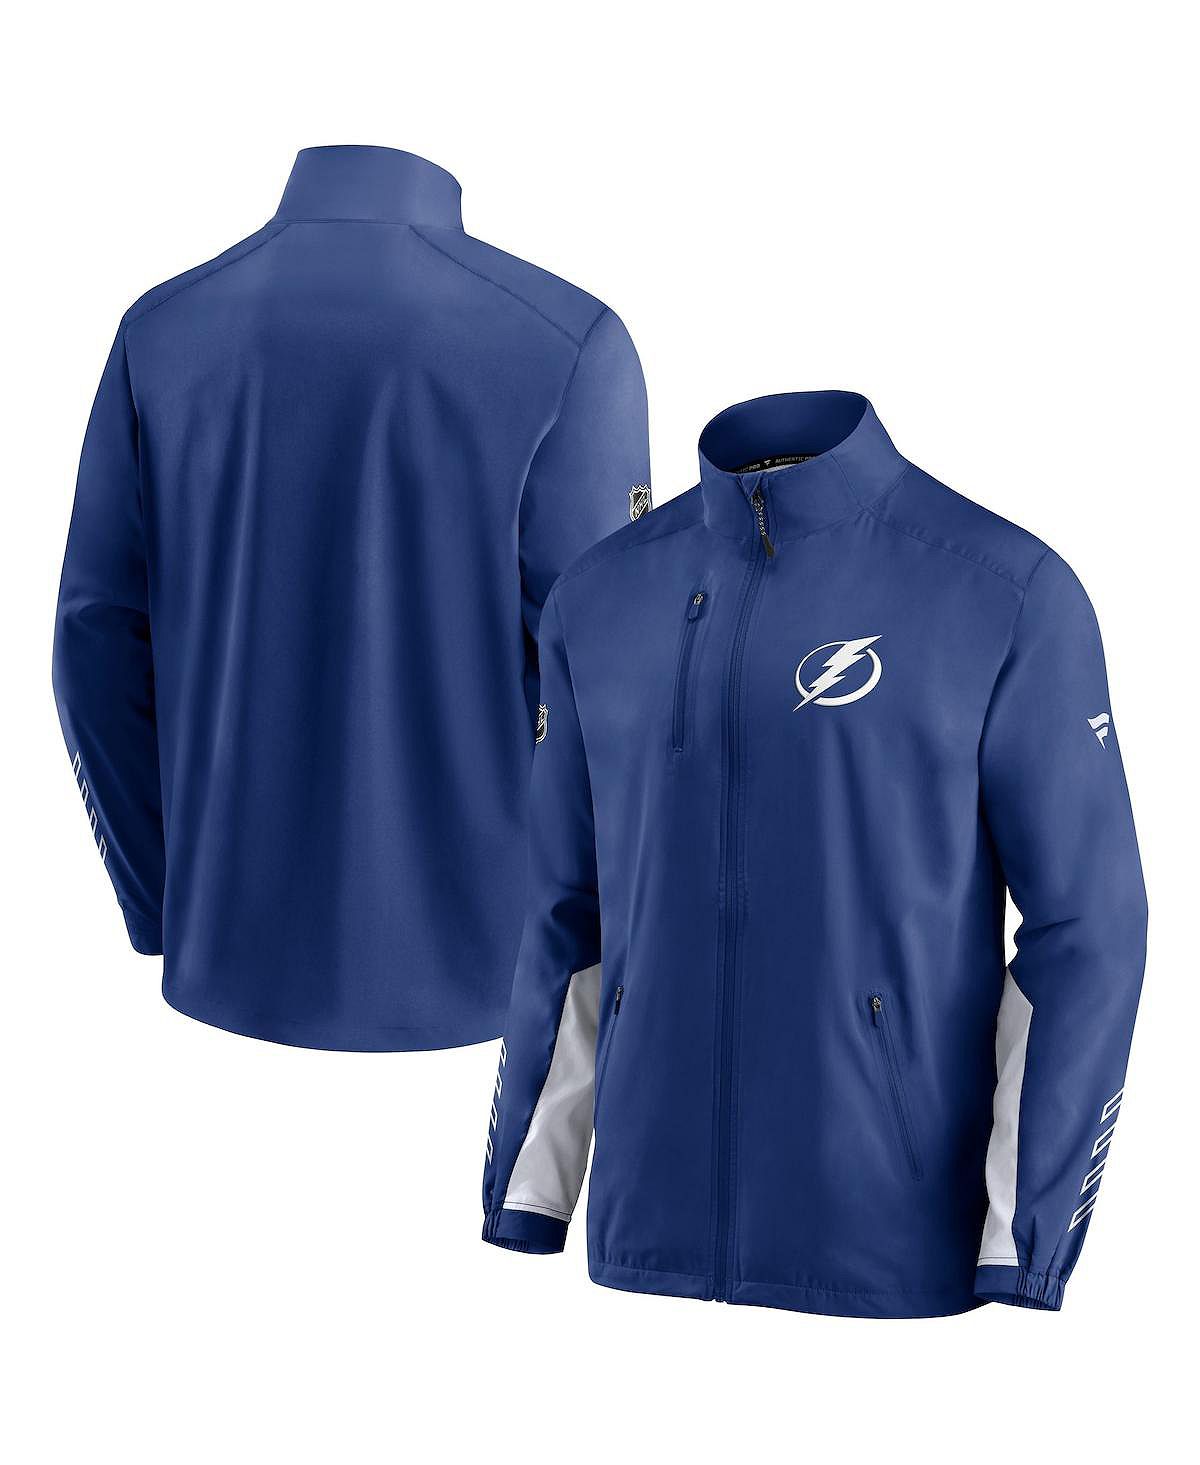 Мужская фирменная синяя куртка tampa bay lightning authentic pro locker room rinkside с полной молнией Fanatics, синий